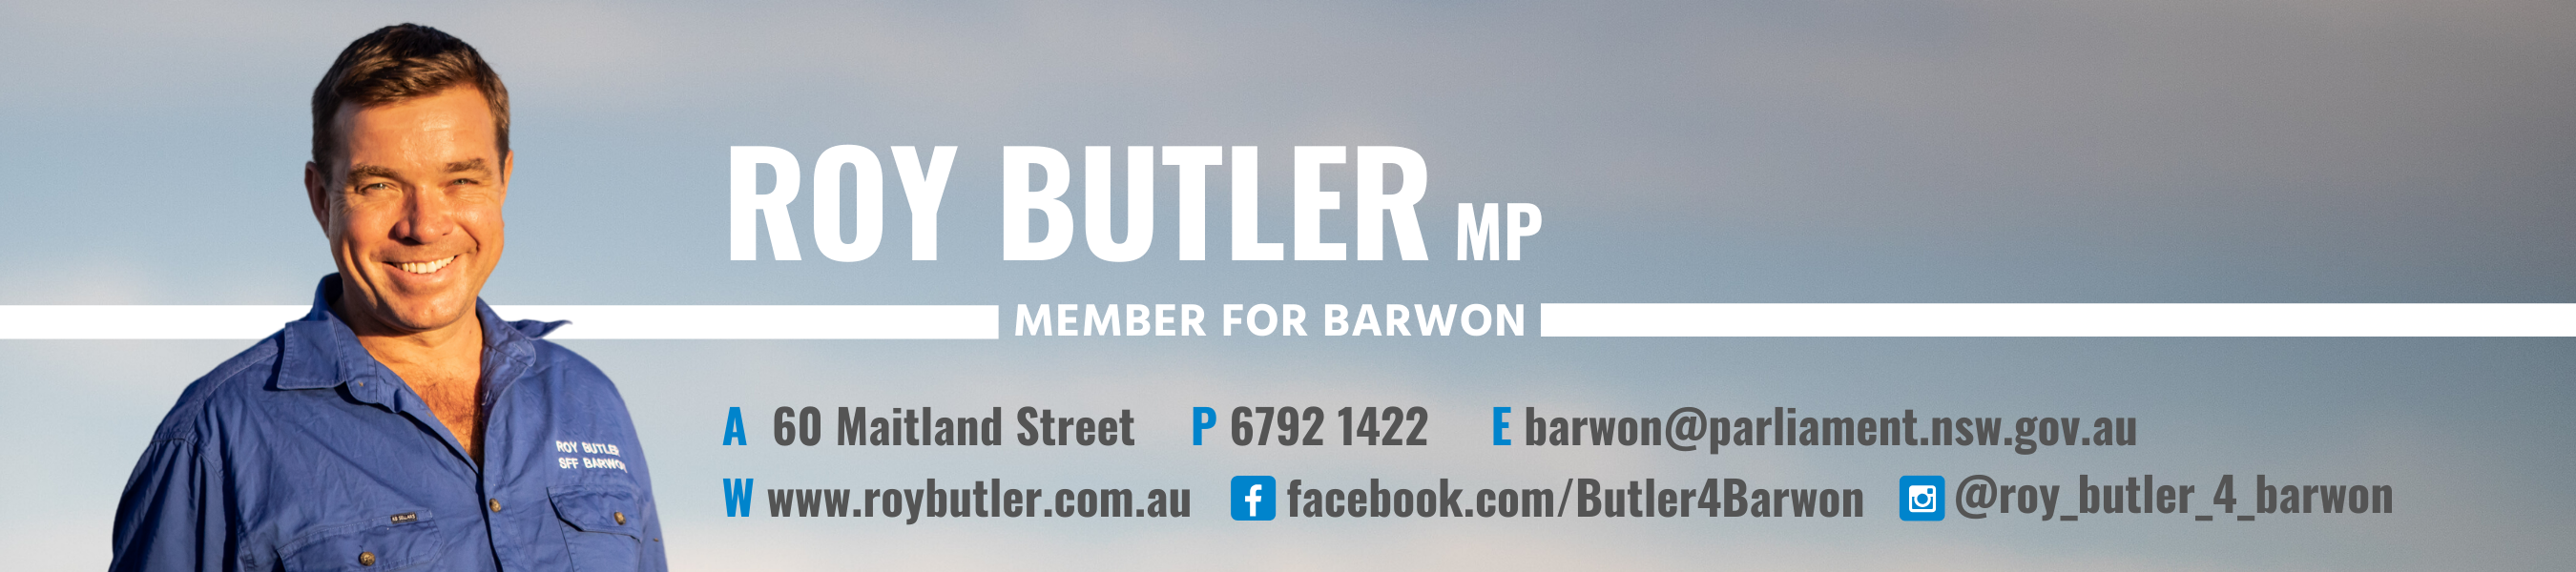 Roy Butler MP Member for Barwon